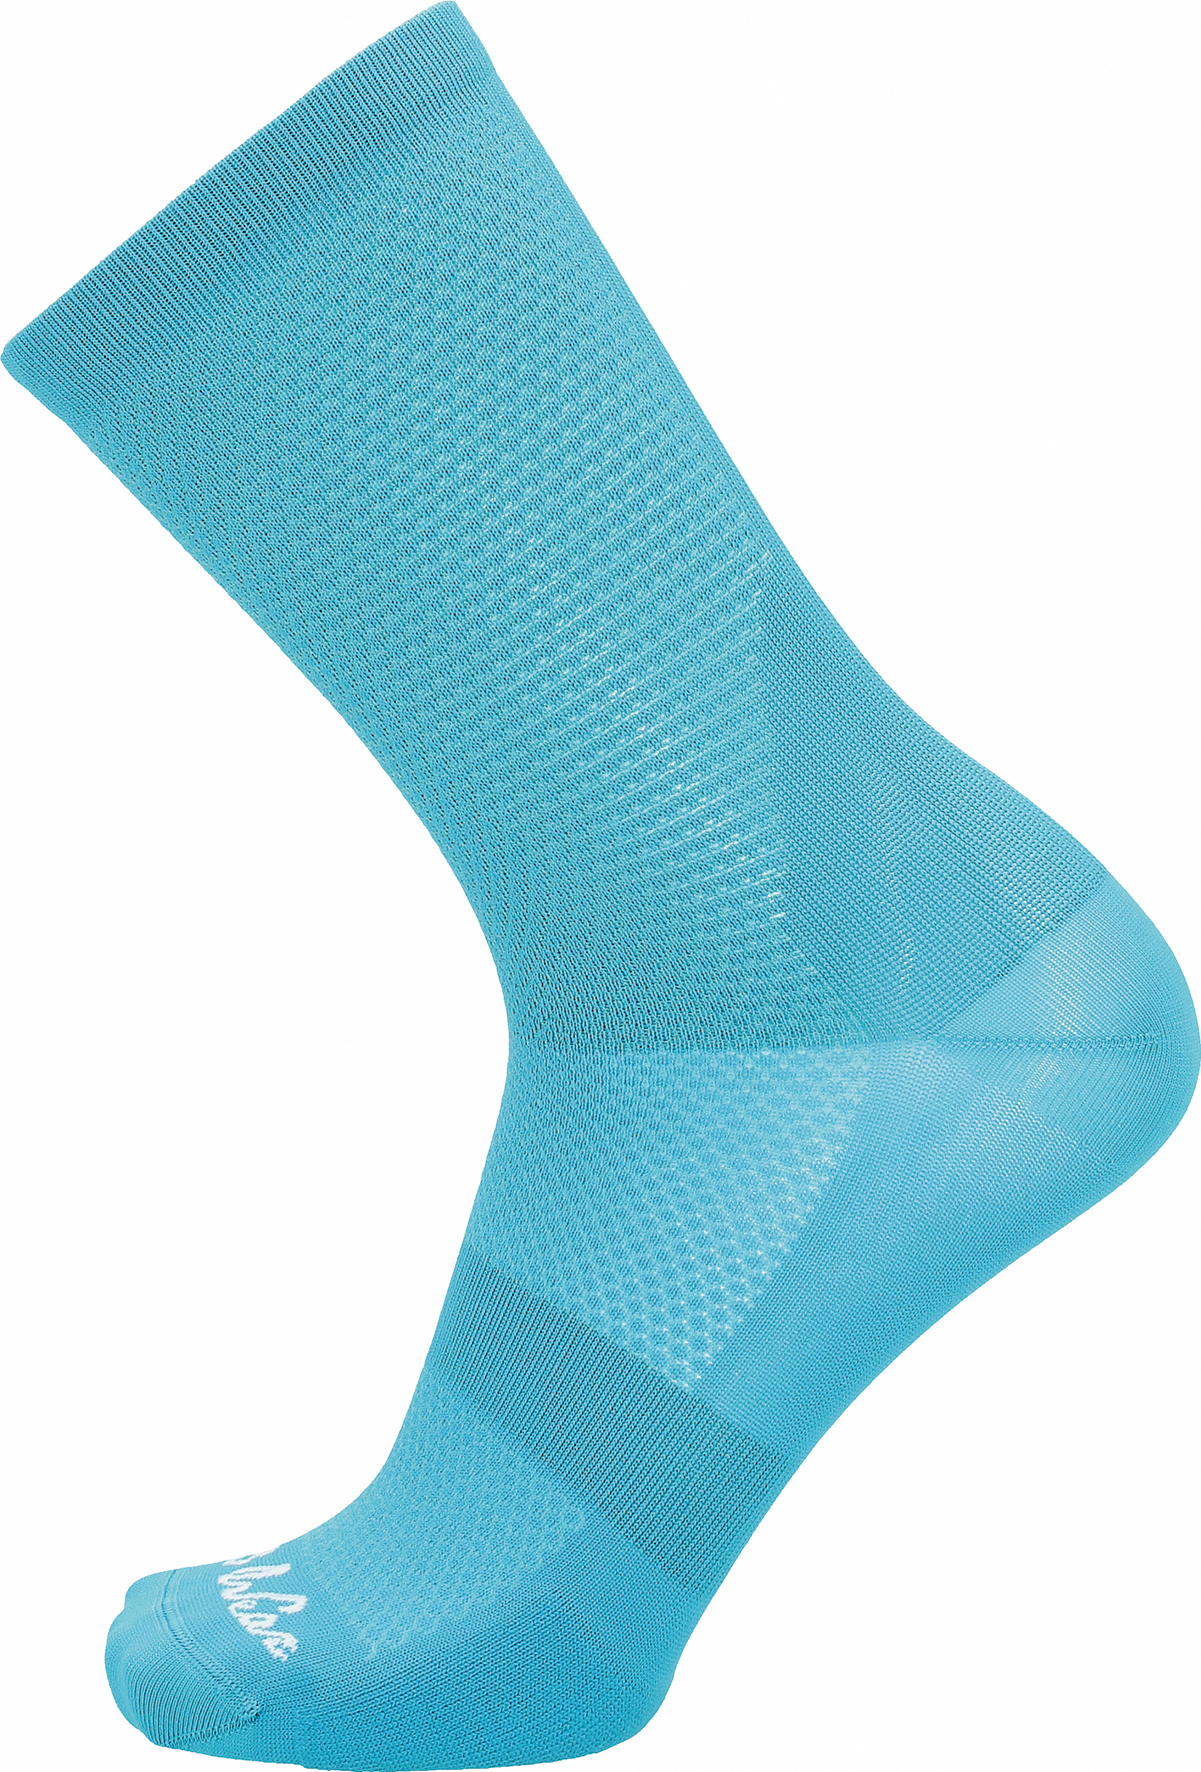 Socken Originals Aquamarine, empf. VK: 17,70 €, Artikel in 2 Variationen verfügbar